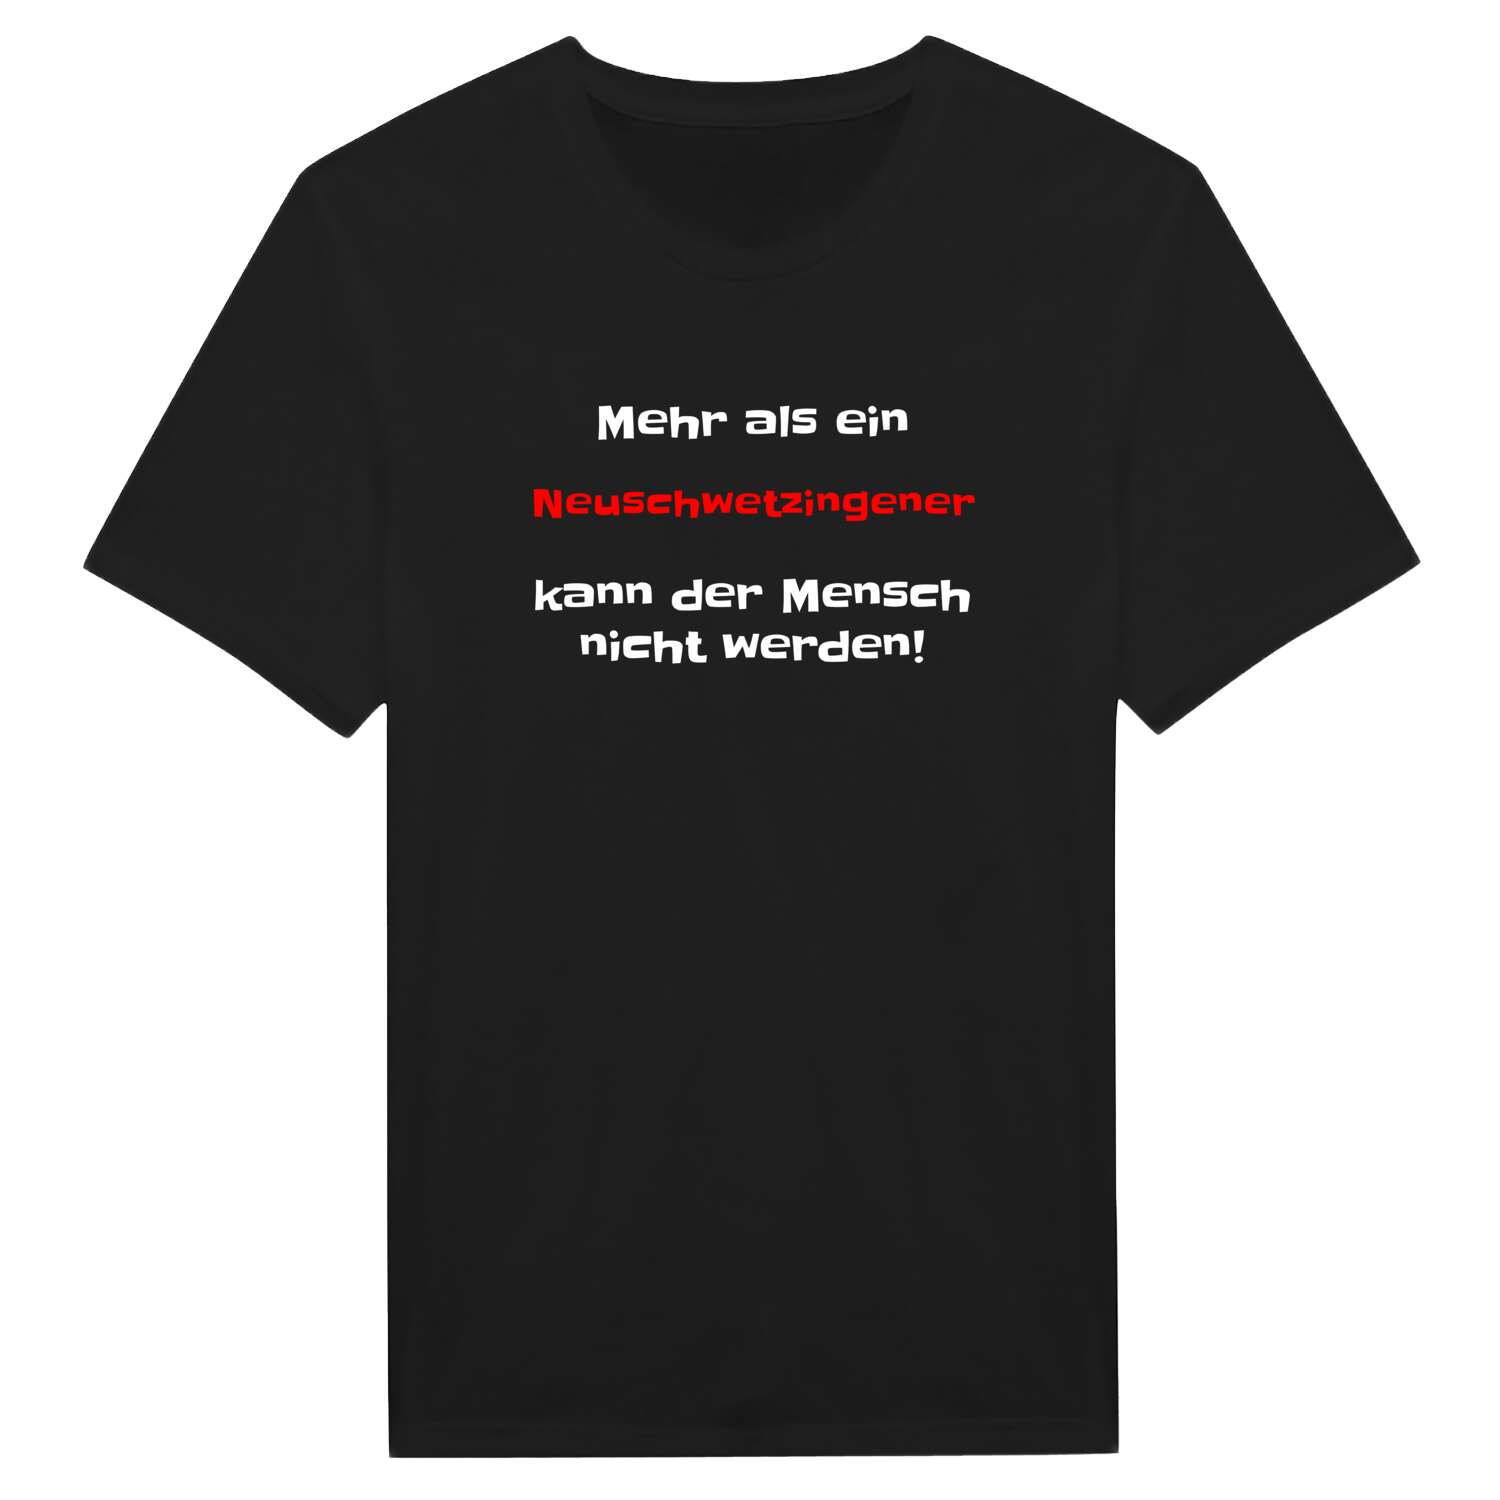 Neuschwetzingen T-Shirt »Mehr als ein«